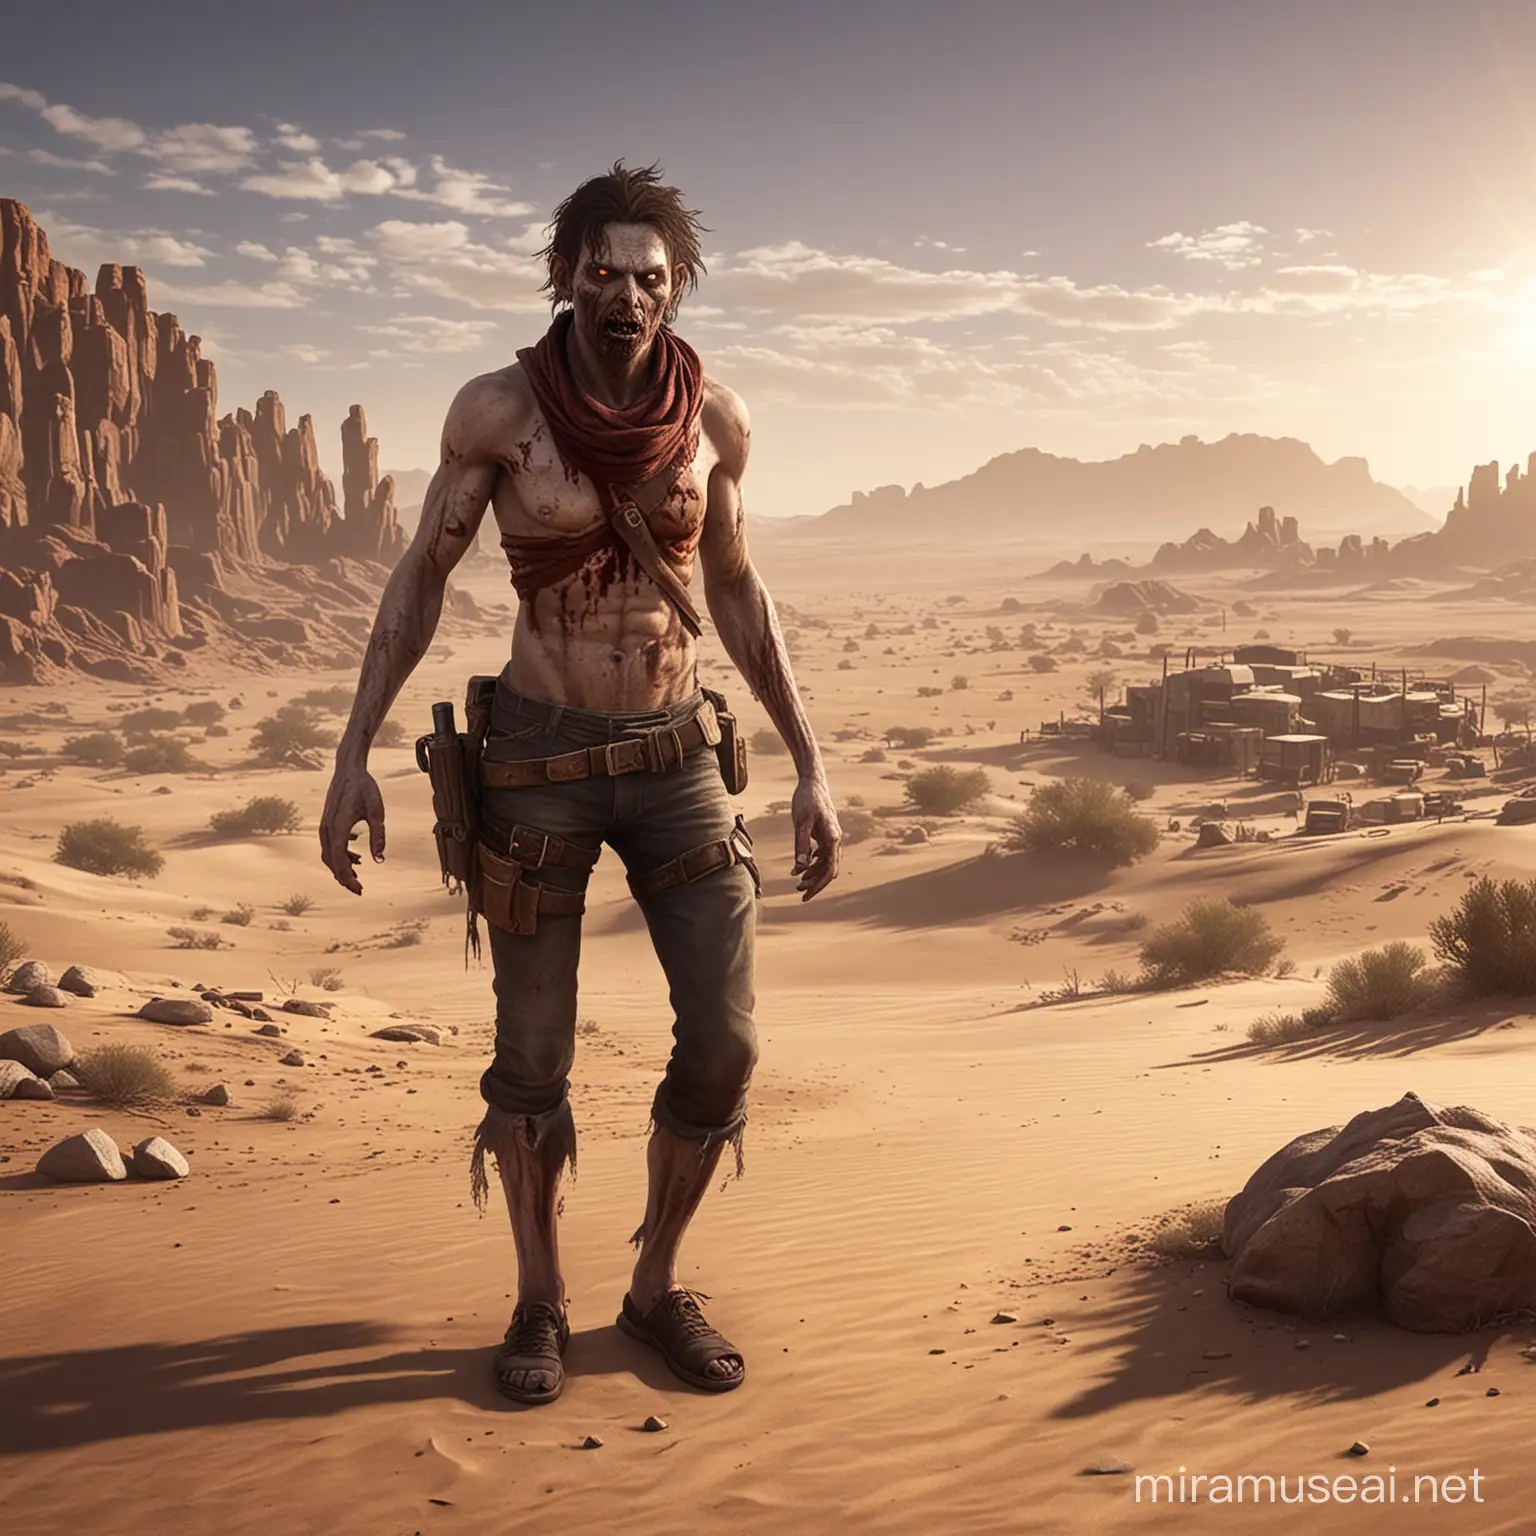 Desert, Adventure ,Game Survivor, Zombie

